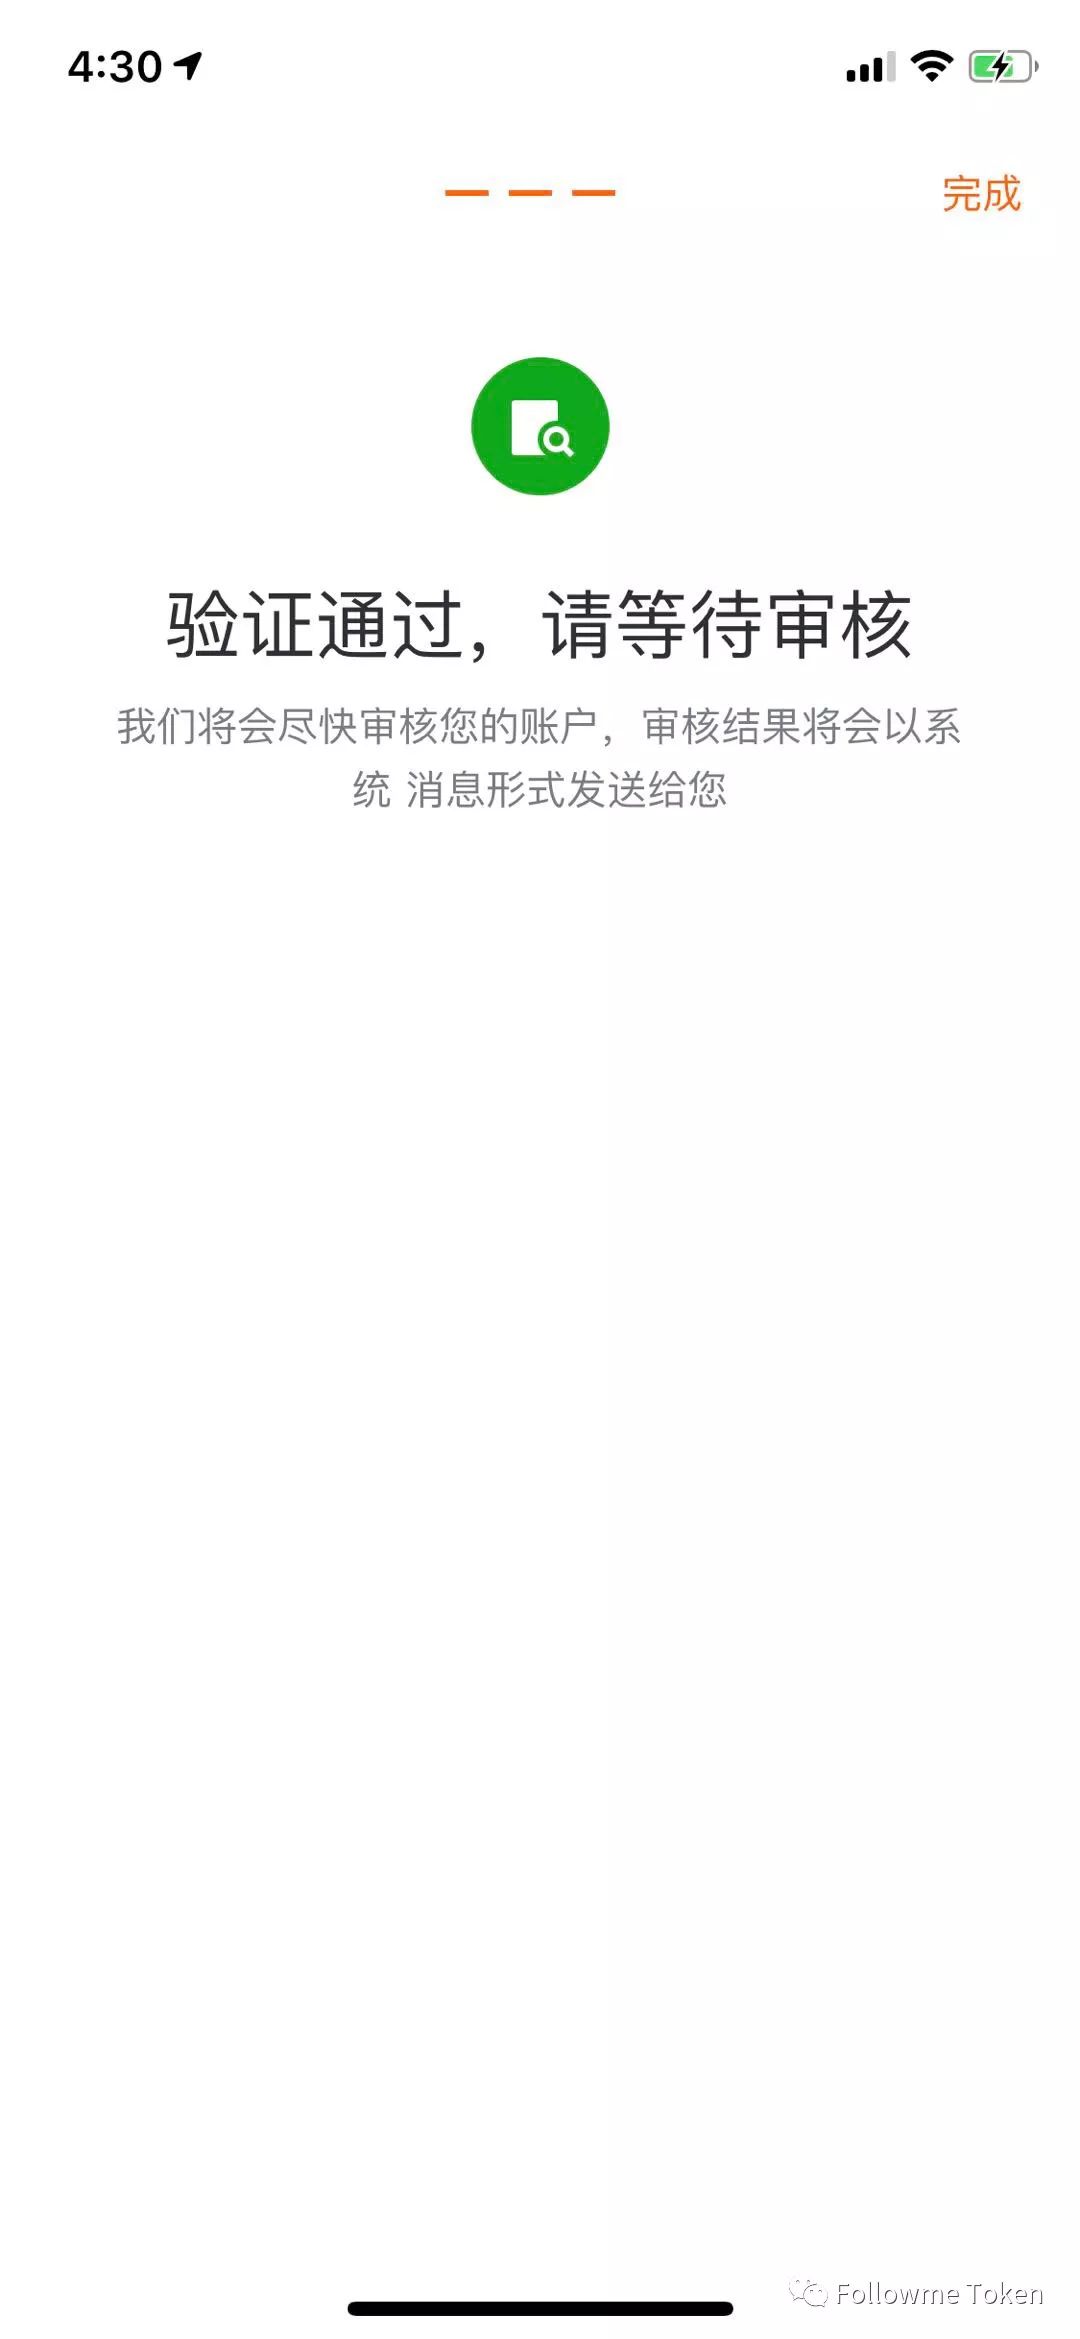 美团app商家版下载官方下载_usdt交易中国合法吗_USDT交易所官方APP下载